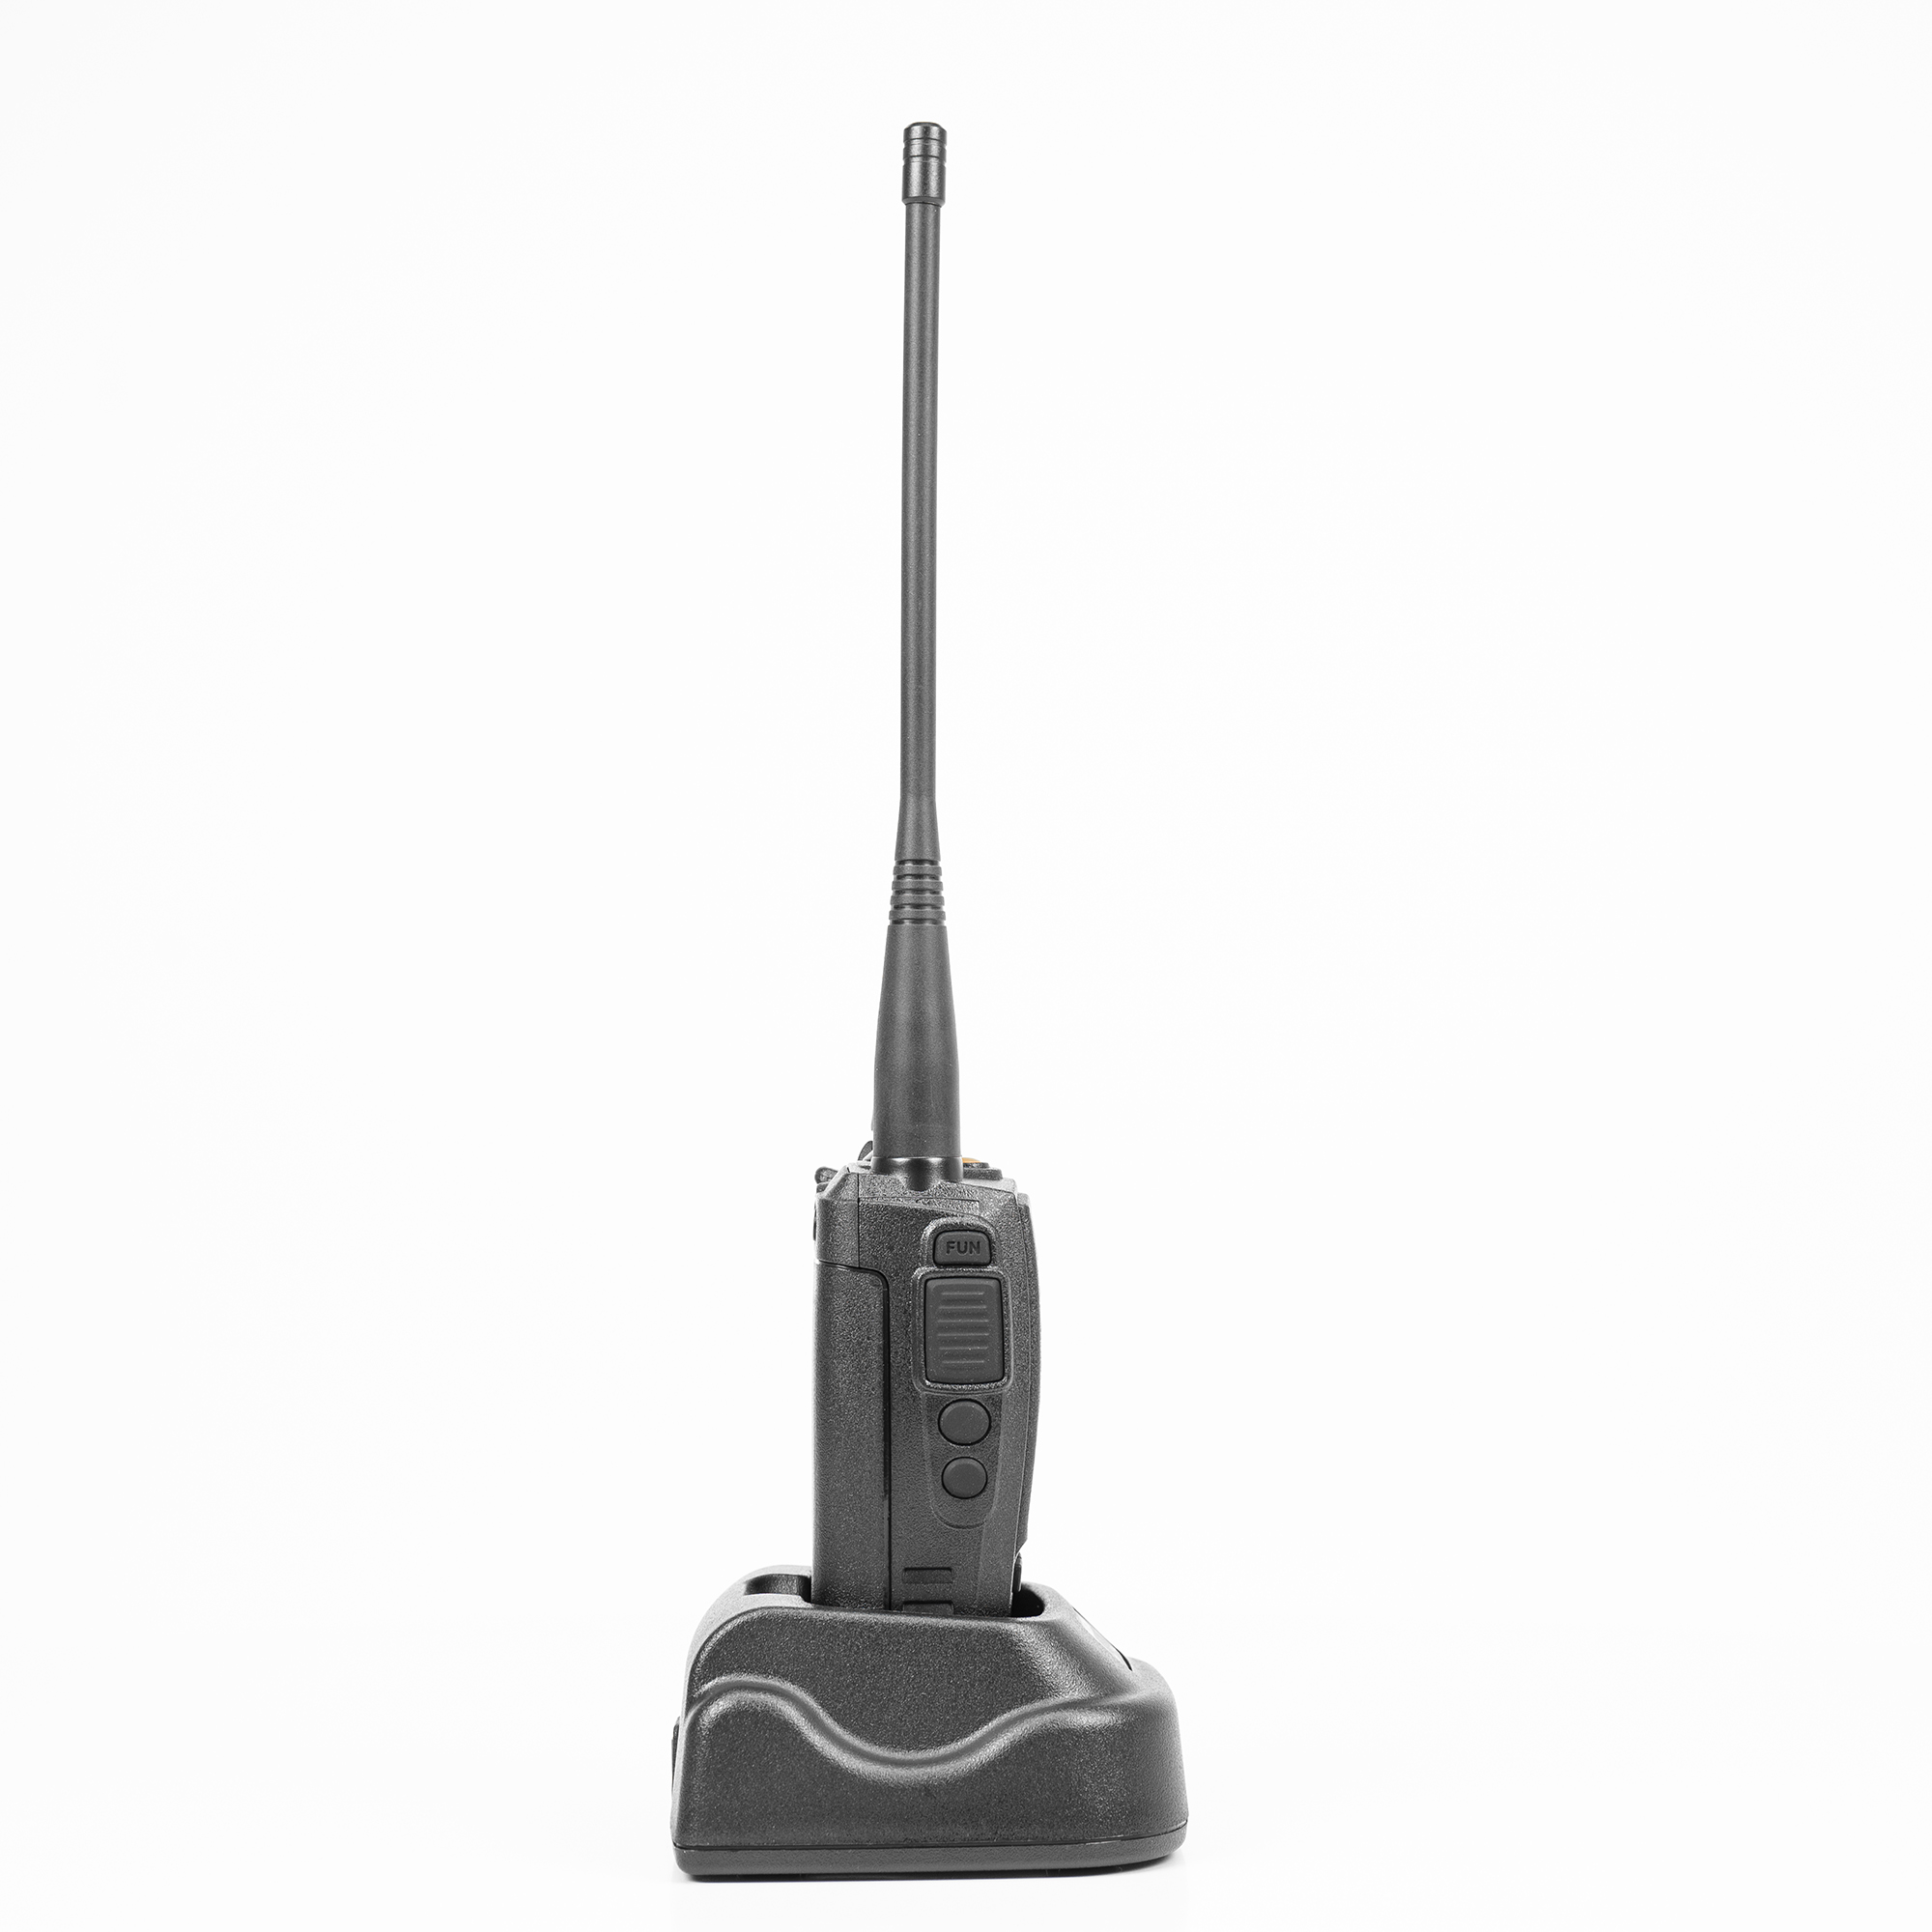 Statie radio portabila VHF PNI Dynascan V-600, 136-174 MHz, IP67, Scan, Scrambler, VOX image5